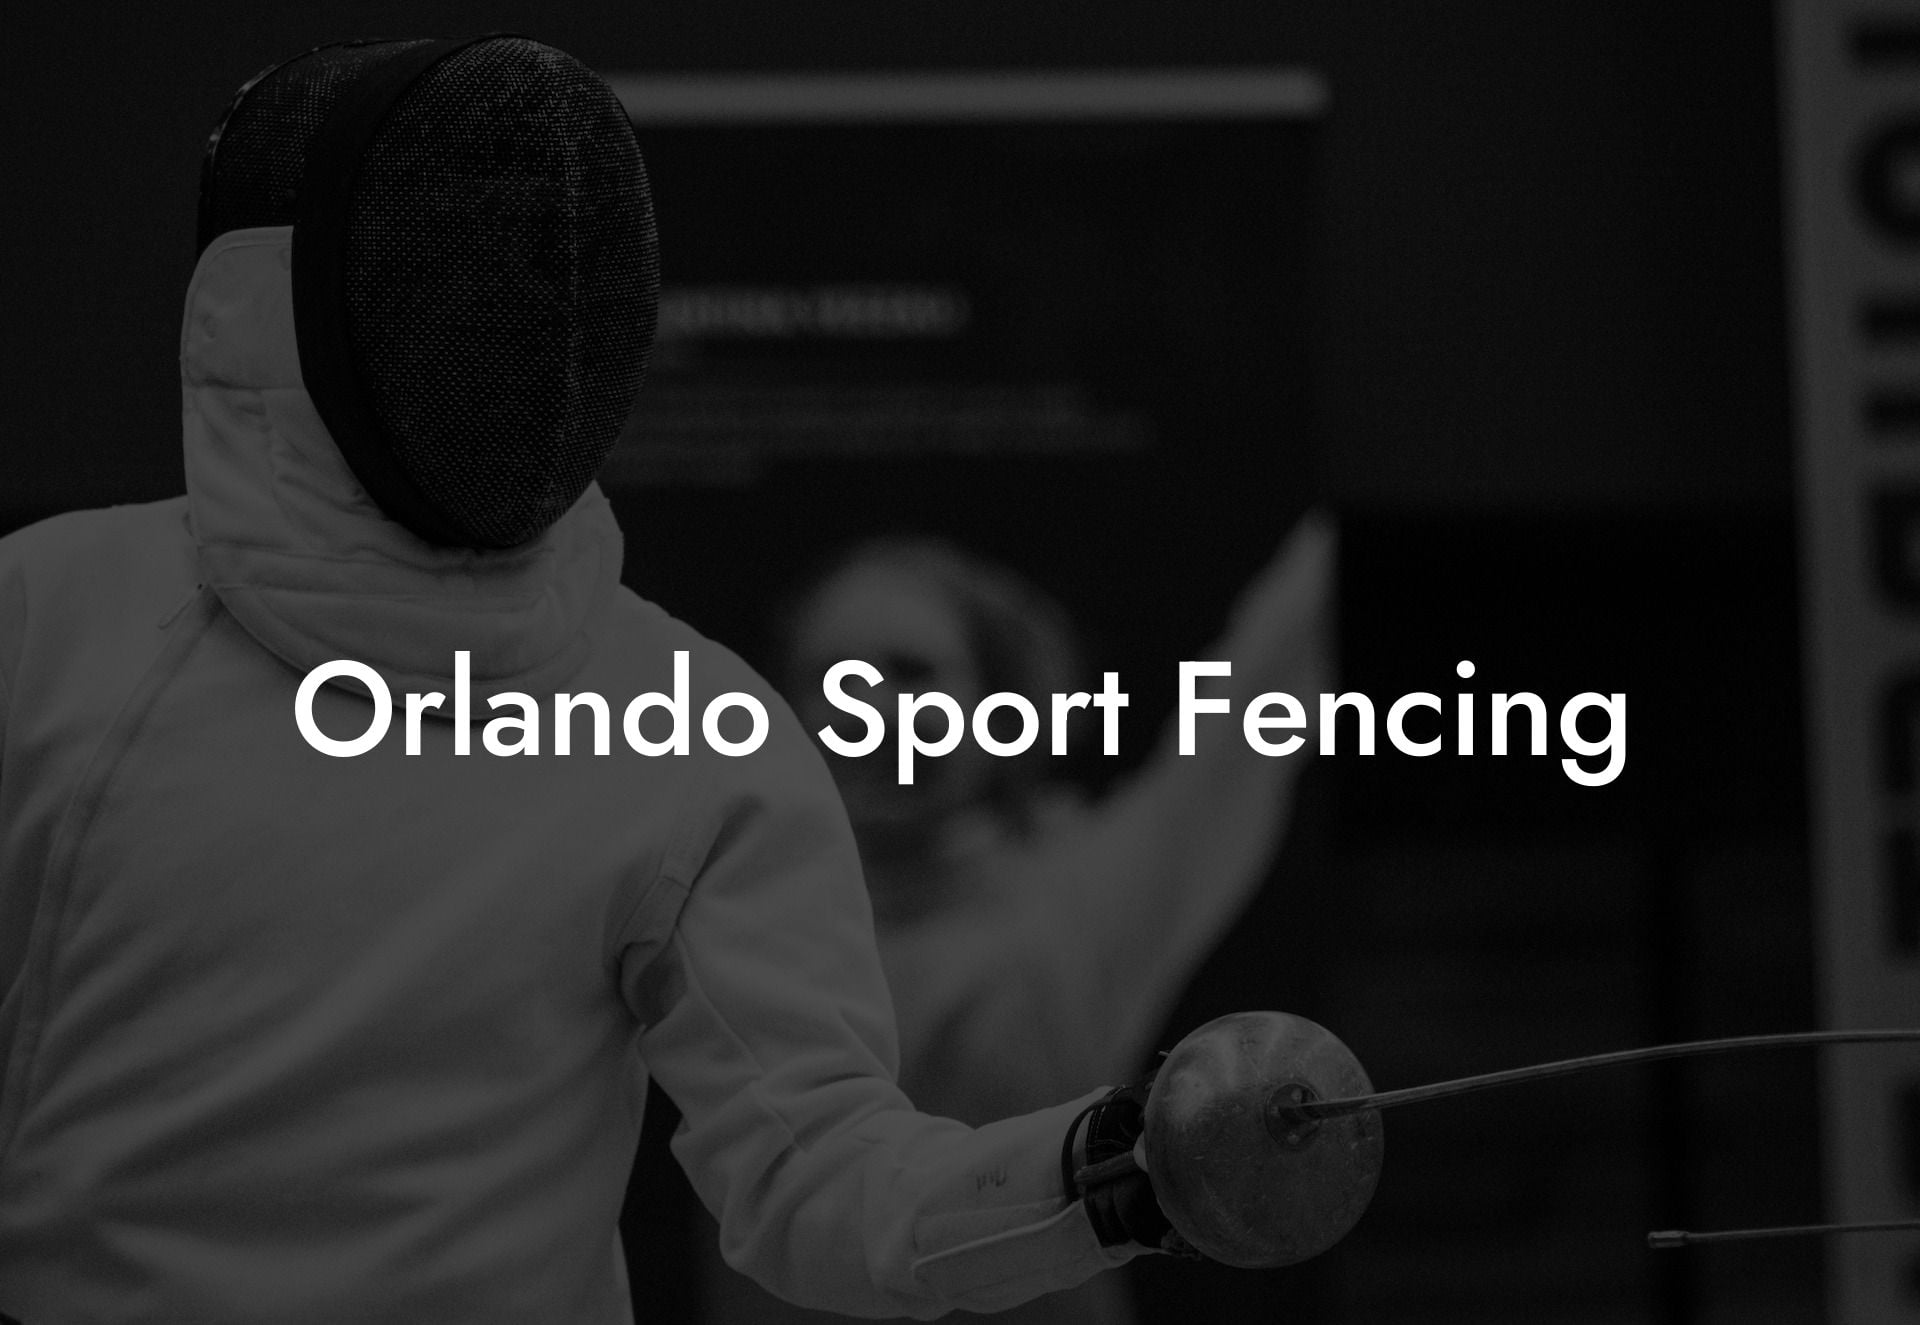 Orlando Sport Fencing